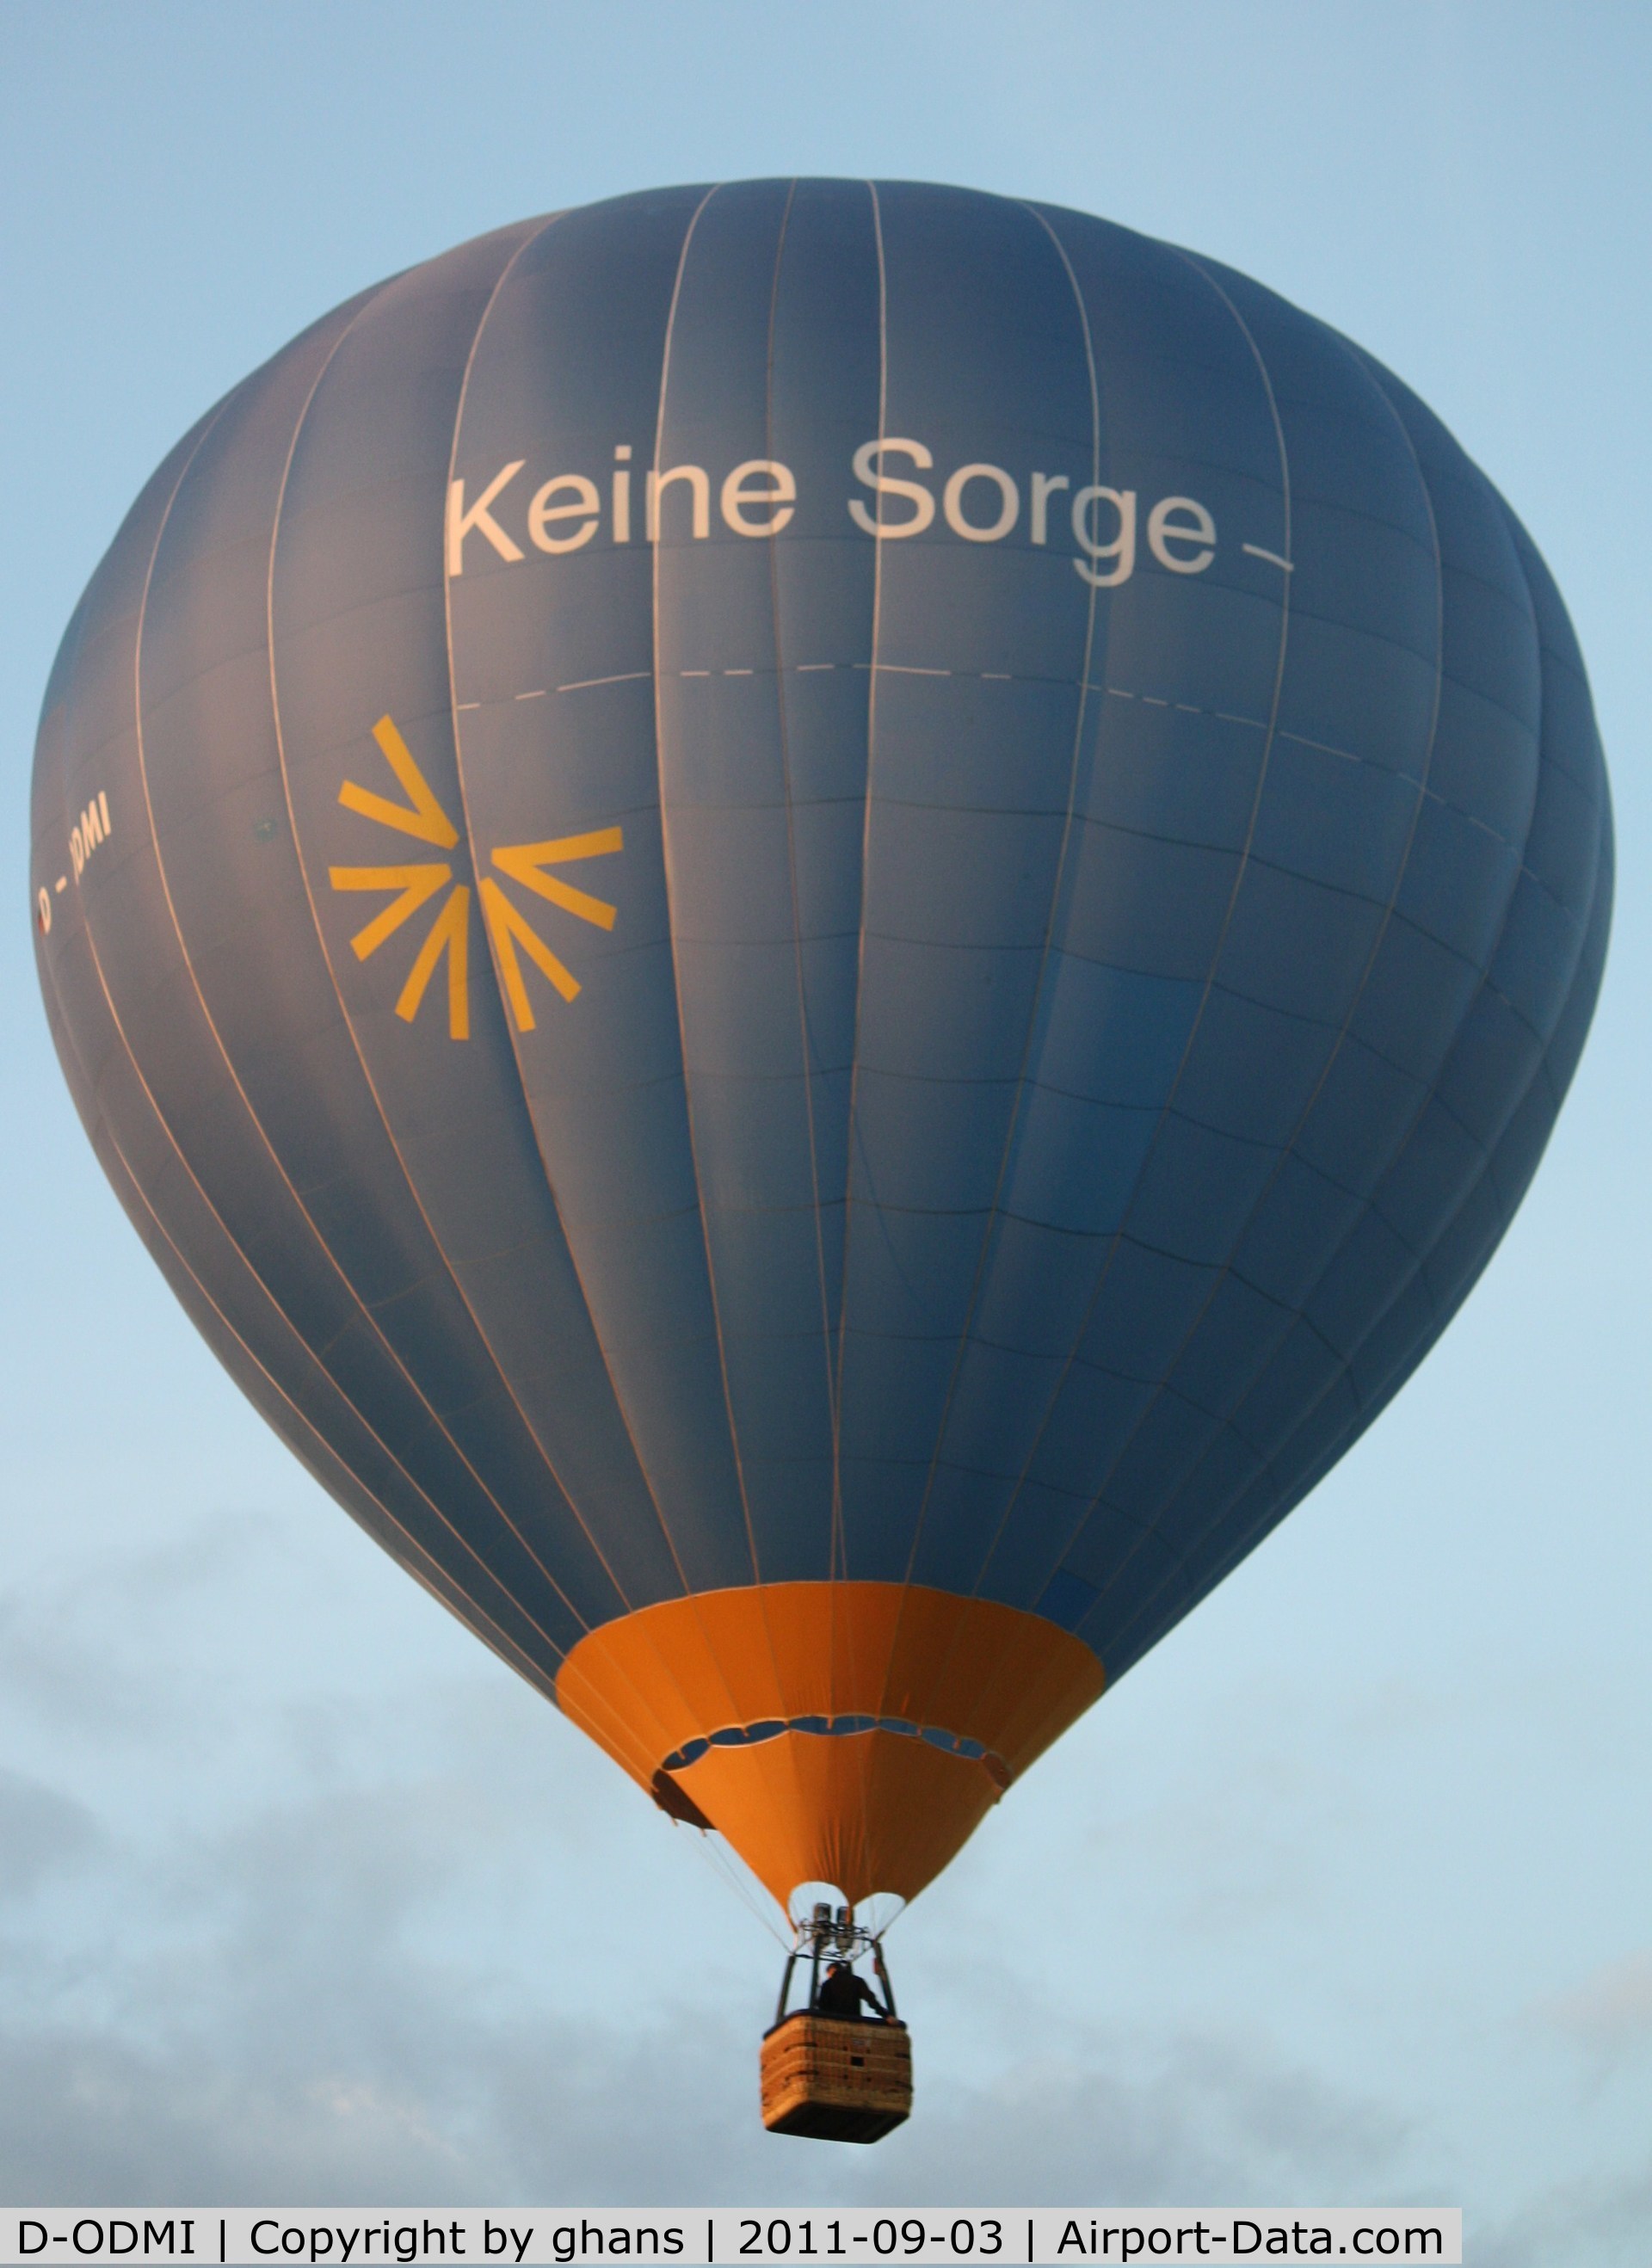 D-ODMI, 1999 Schroeder Fire Balloons G C/N 765, WIM 2011
'Keine Sorge'